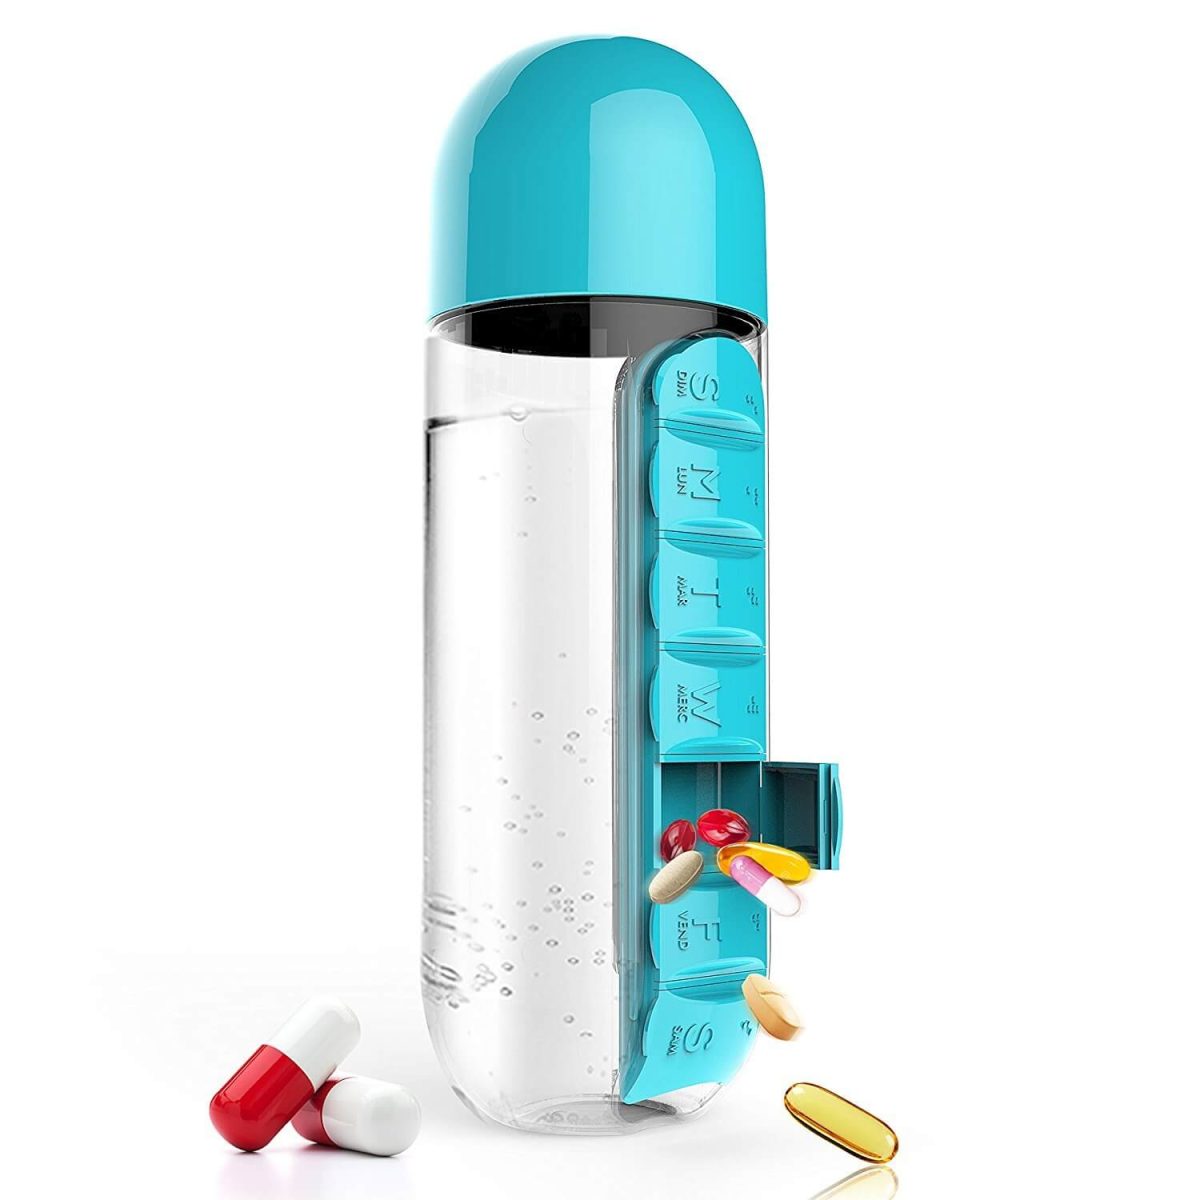 Water Bottle Daily Pill Organizer - MaviGadget